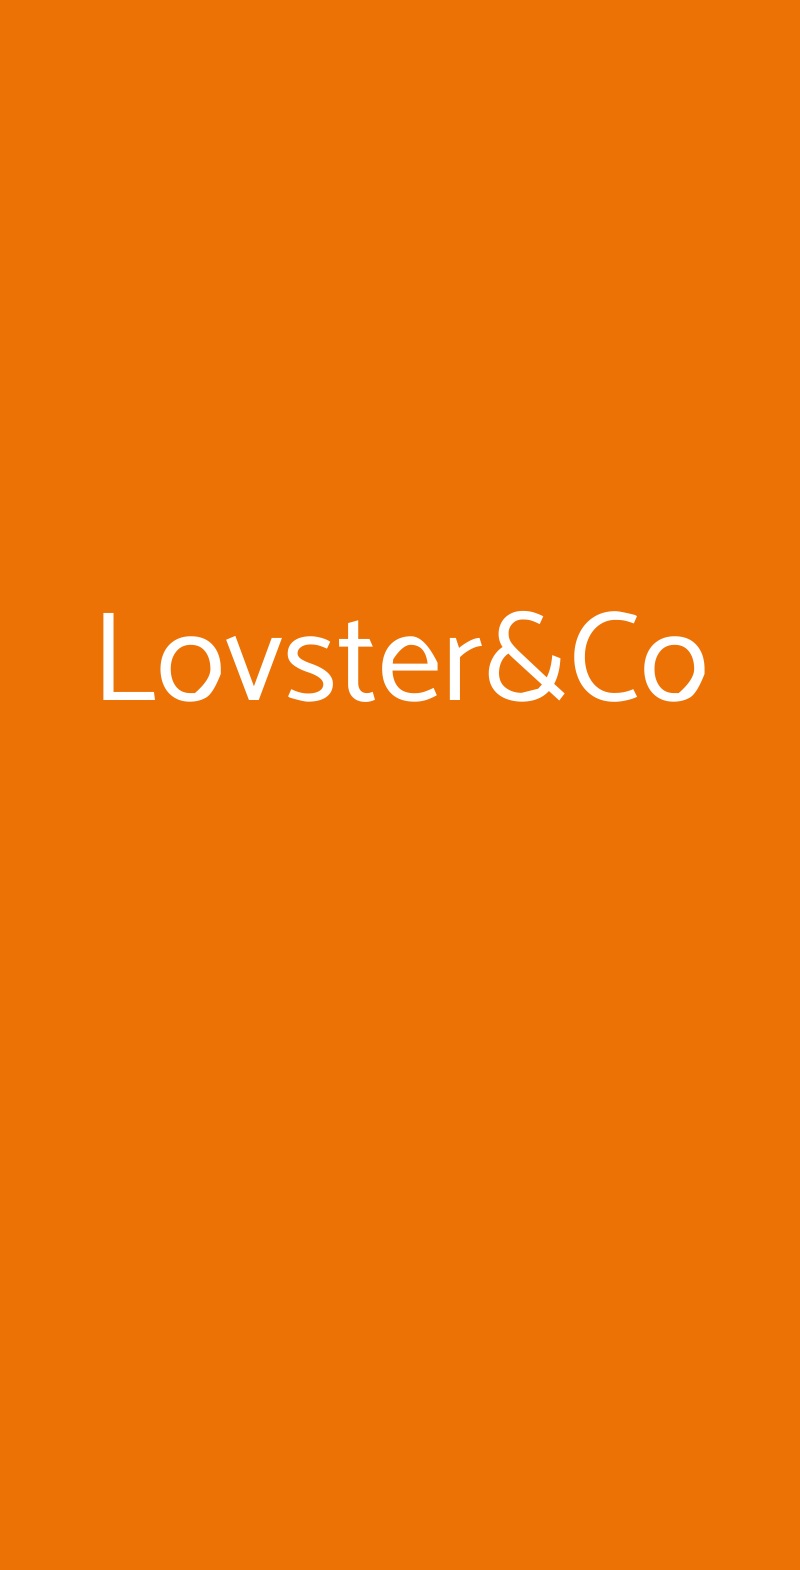 Lovster&Co Milano menù 1 pagina